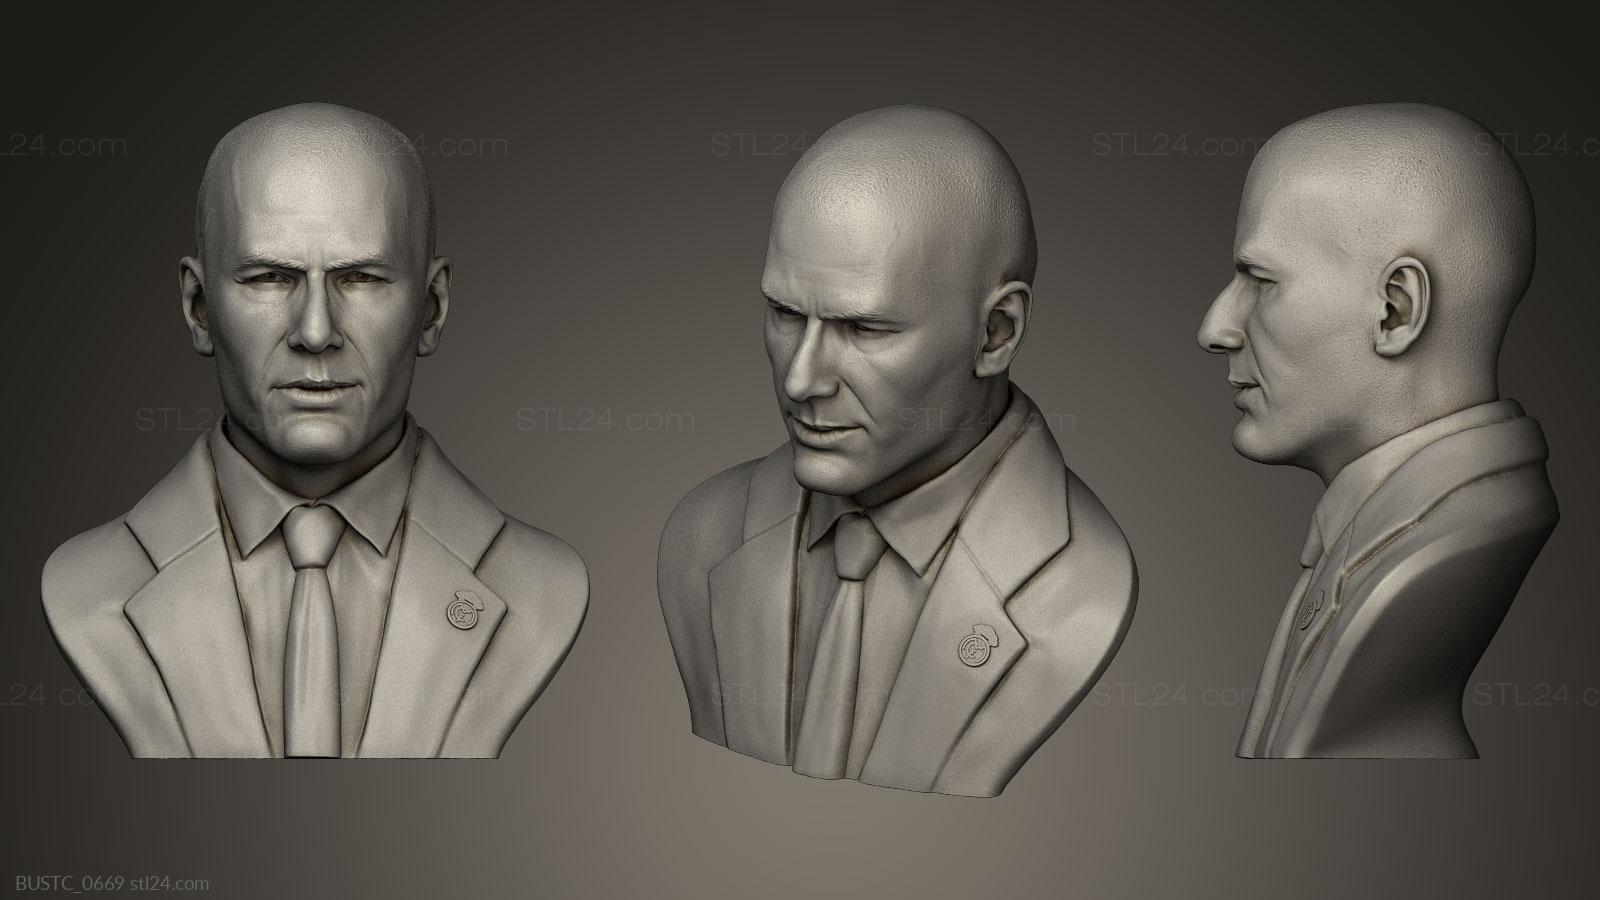 Бюсты и барельефы известных личностей (Зинедин Зидан, BUSTC_0669) 3D модель для ЧПУ станка